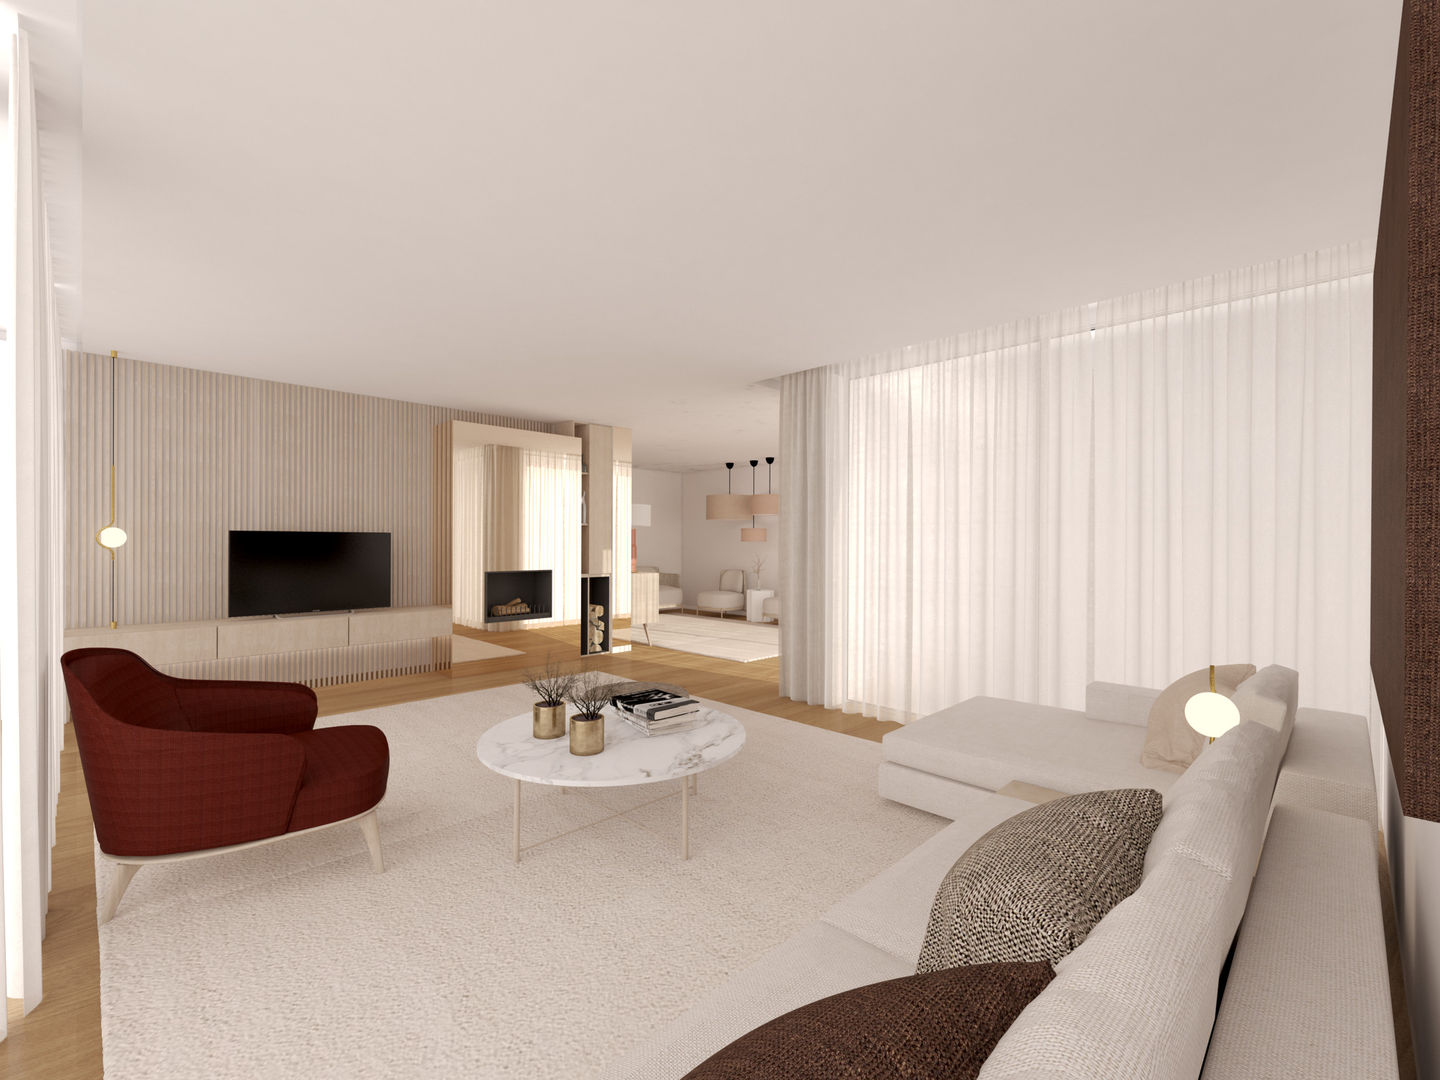 Moradia em Tagilde, Vizela - 2020, MIA arquitetos MIA arquitetos Salas de estar modernas